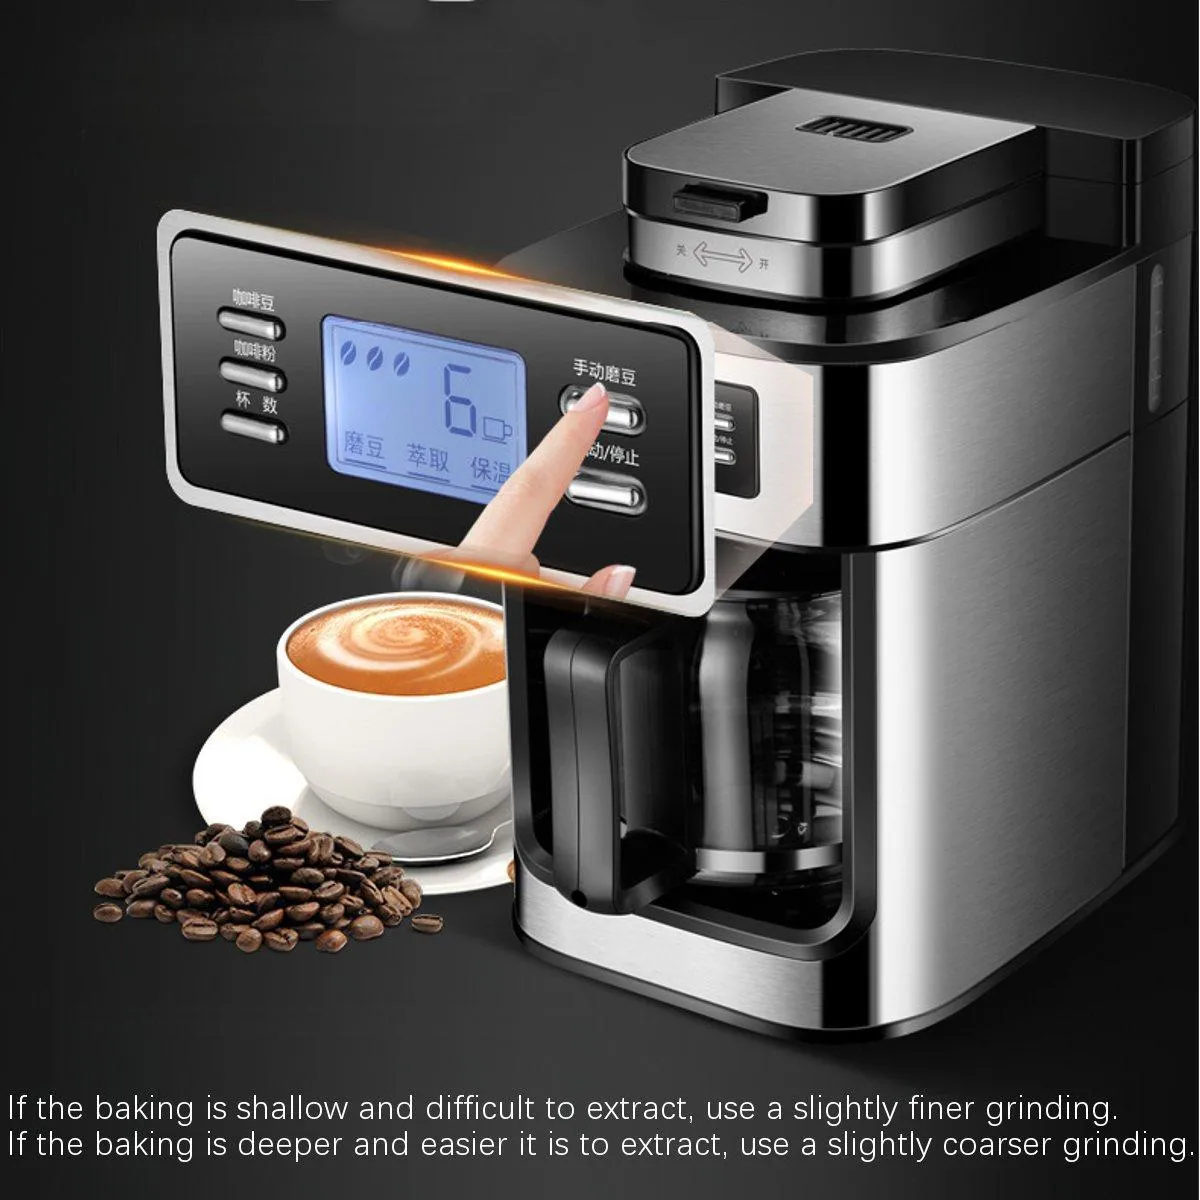 100 % 새로운 브랜드 전기 커피 메이커 완전 자동 드립 커피 메이커 1200ml 차 커피 주전자 홈 주방 기기 220V 기계 가정용